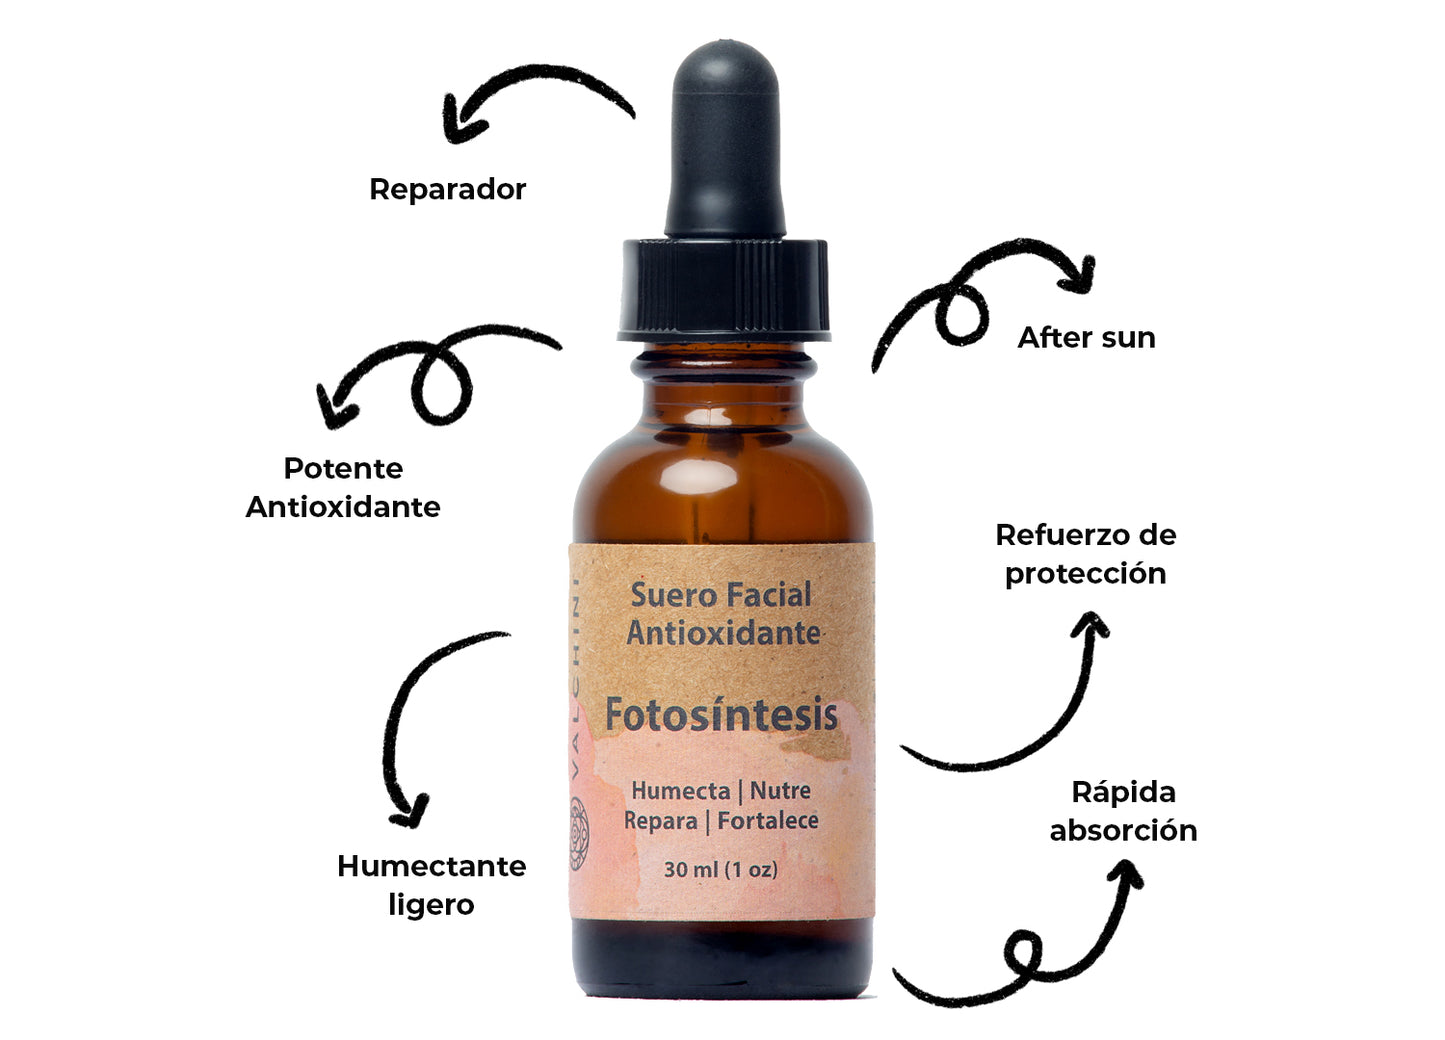 Suero Facial Antioxidante: Fotosíntesis